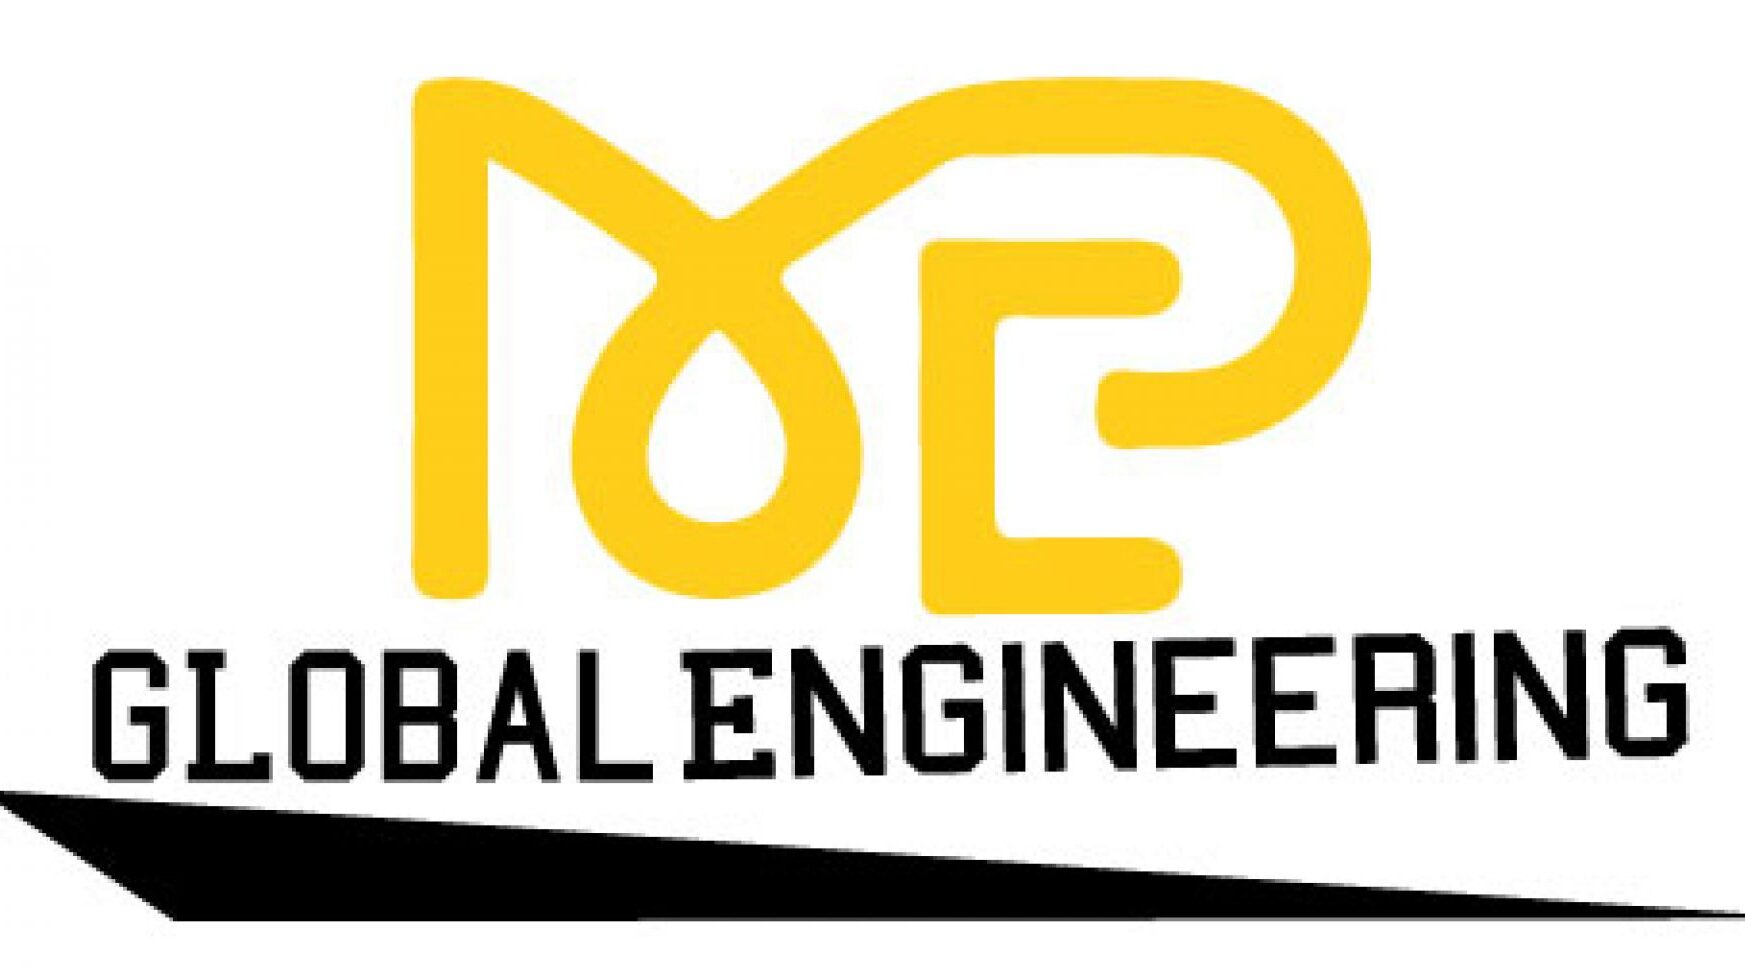 MEP Global Engineering-Blog